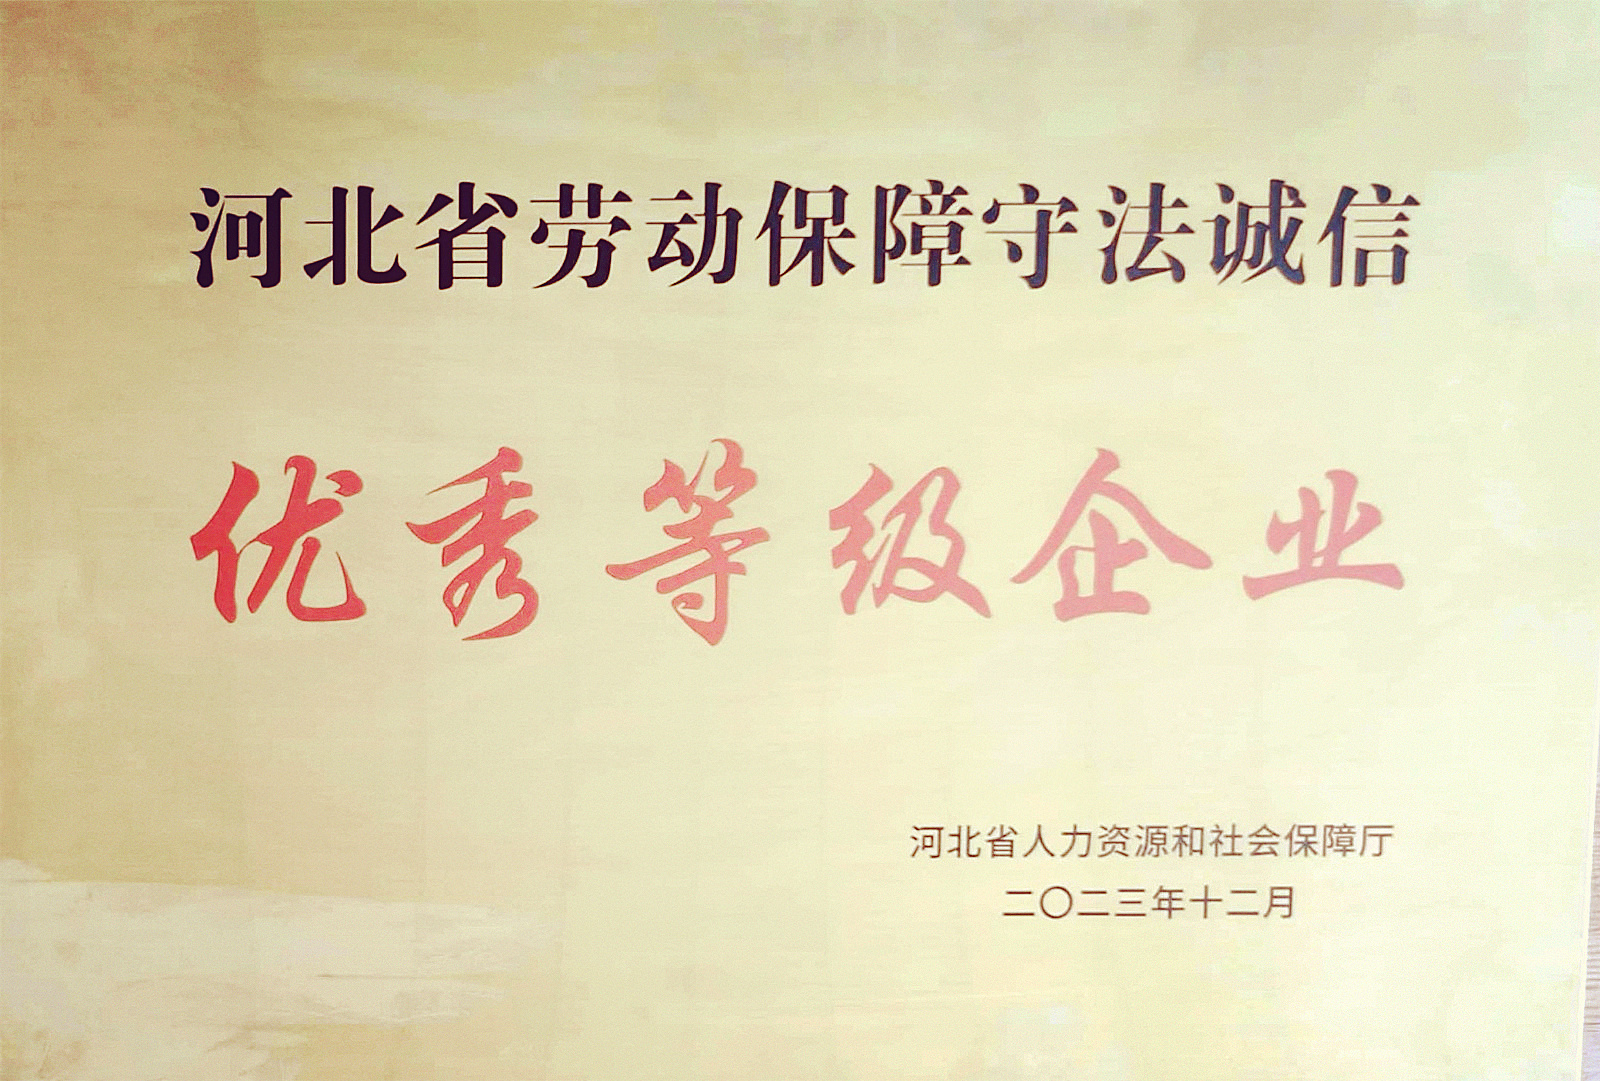 中船风帆有(yǒu)色金属分(fēn)公司获评河北省劳动保障守法诚信“优秀等级企业”